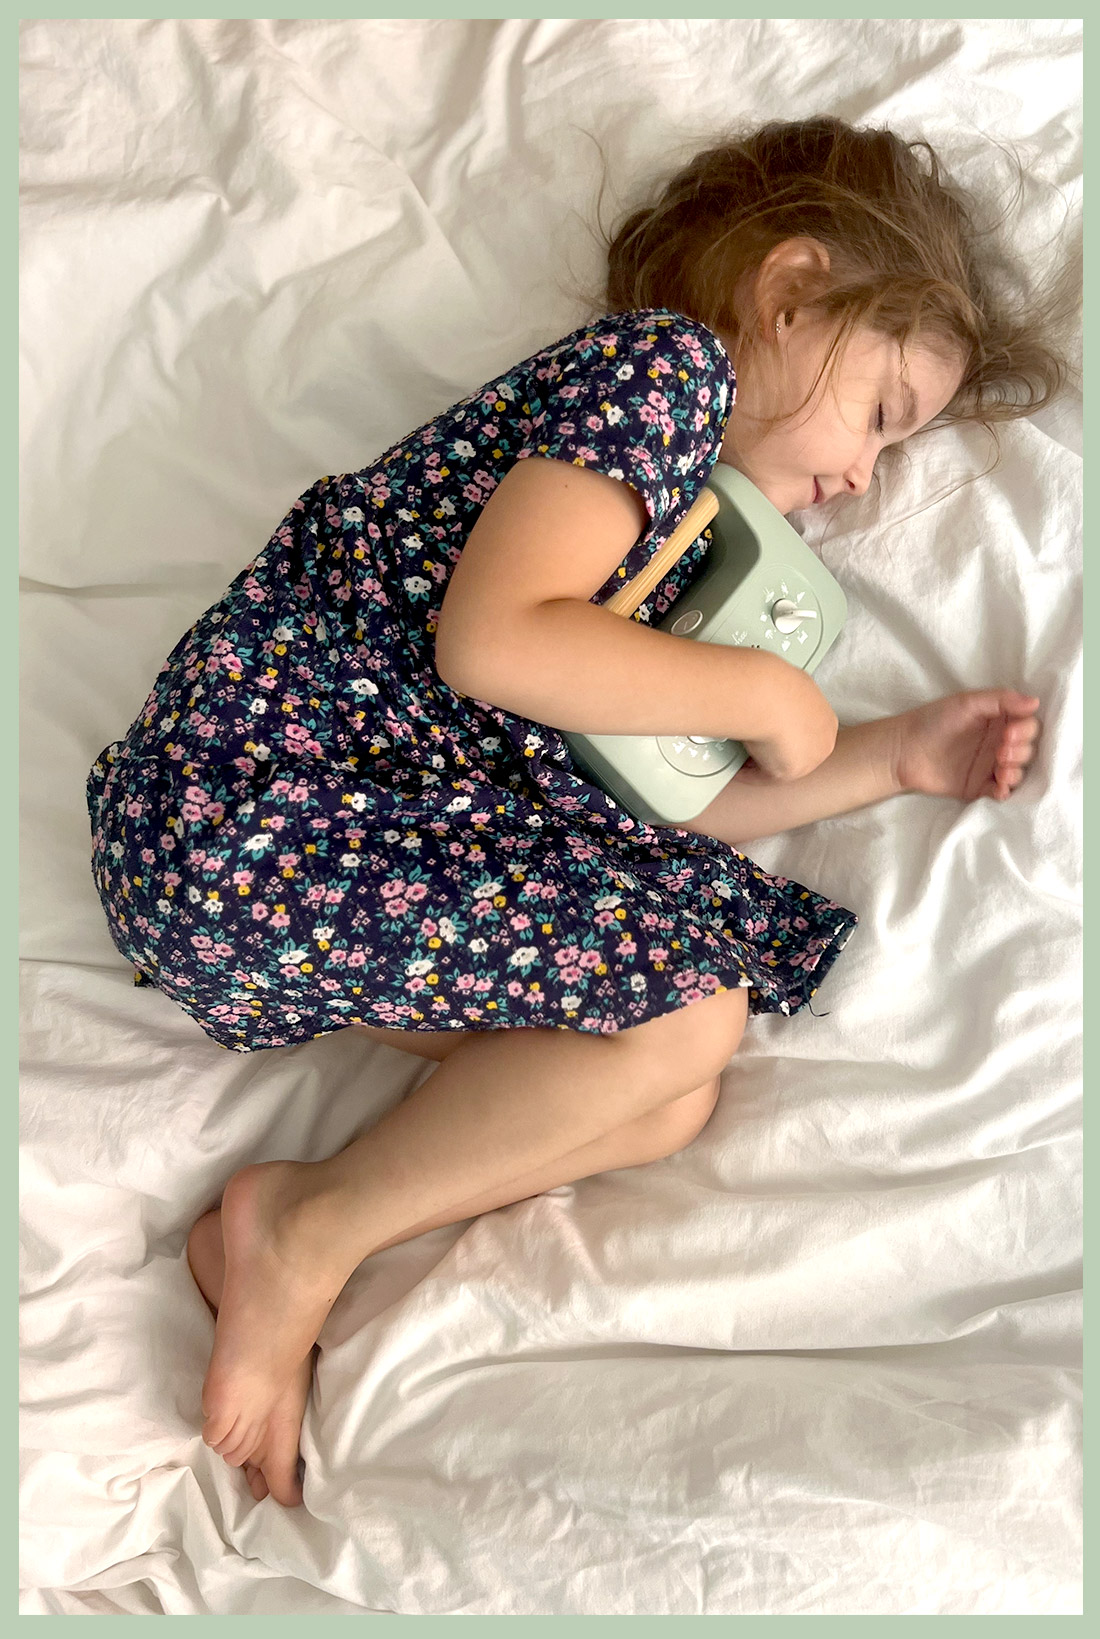 תיבת נגינה אנלוגית לילדים לשינה נעימה והרגעות